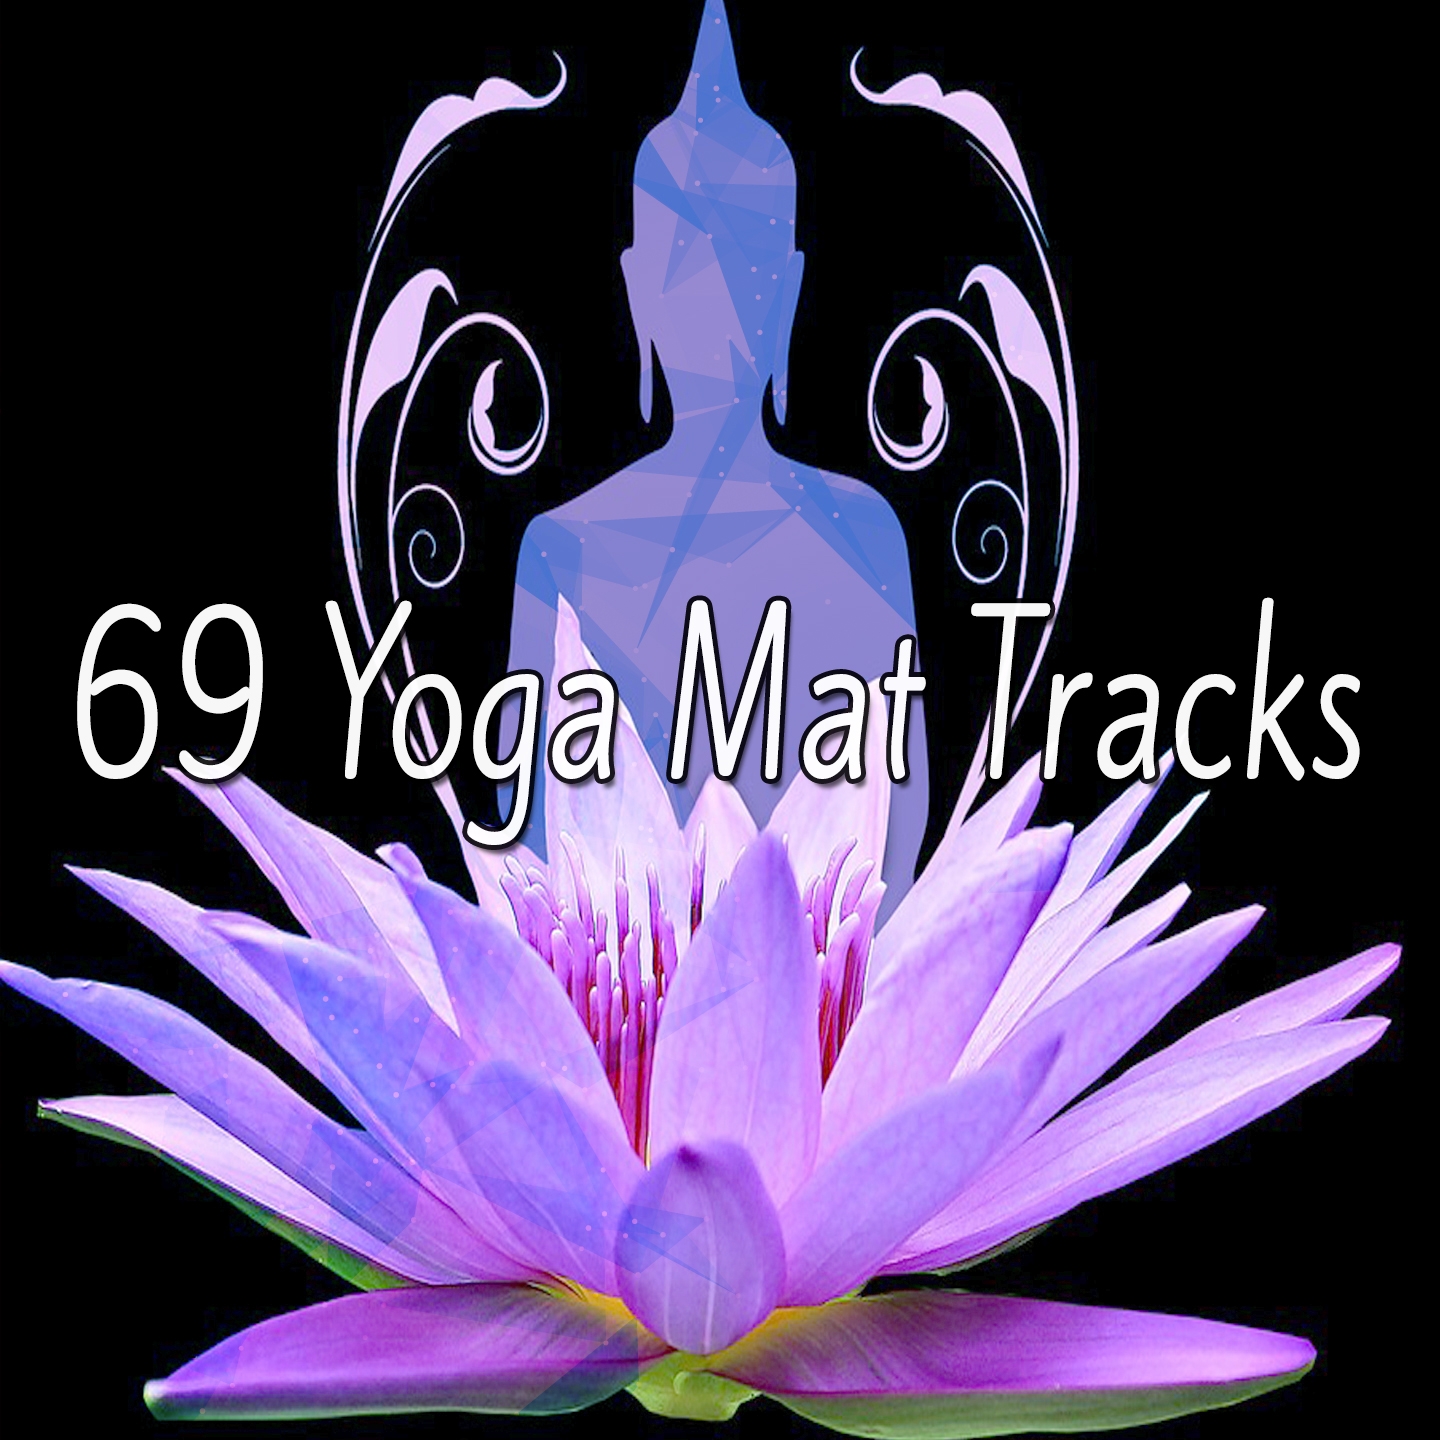 69 Yoga Mat Tracks